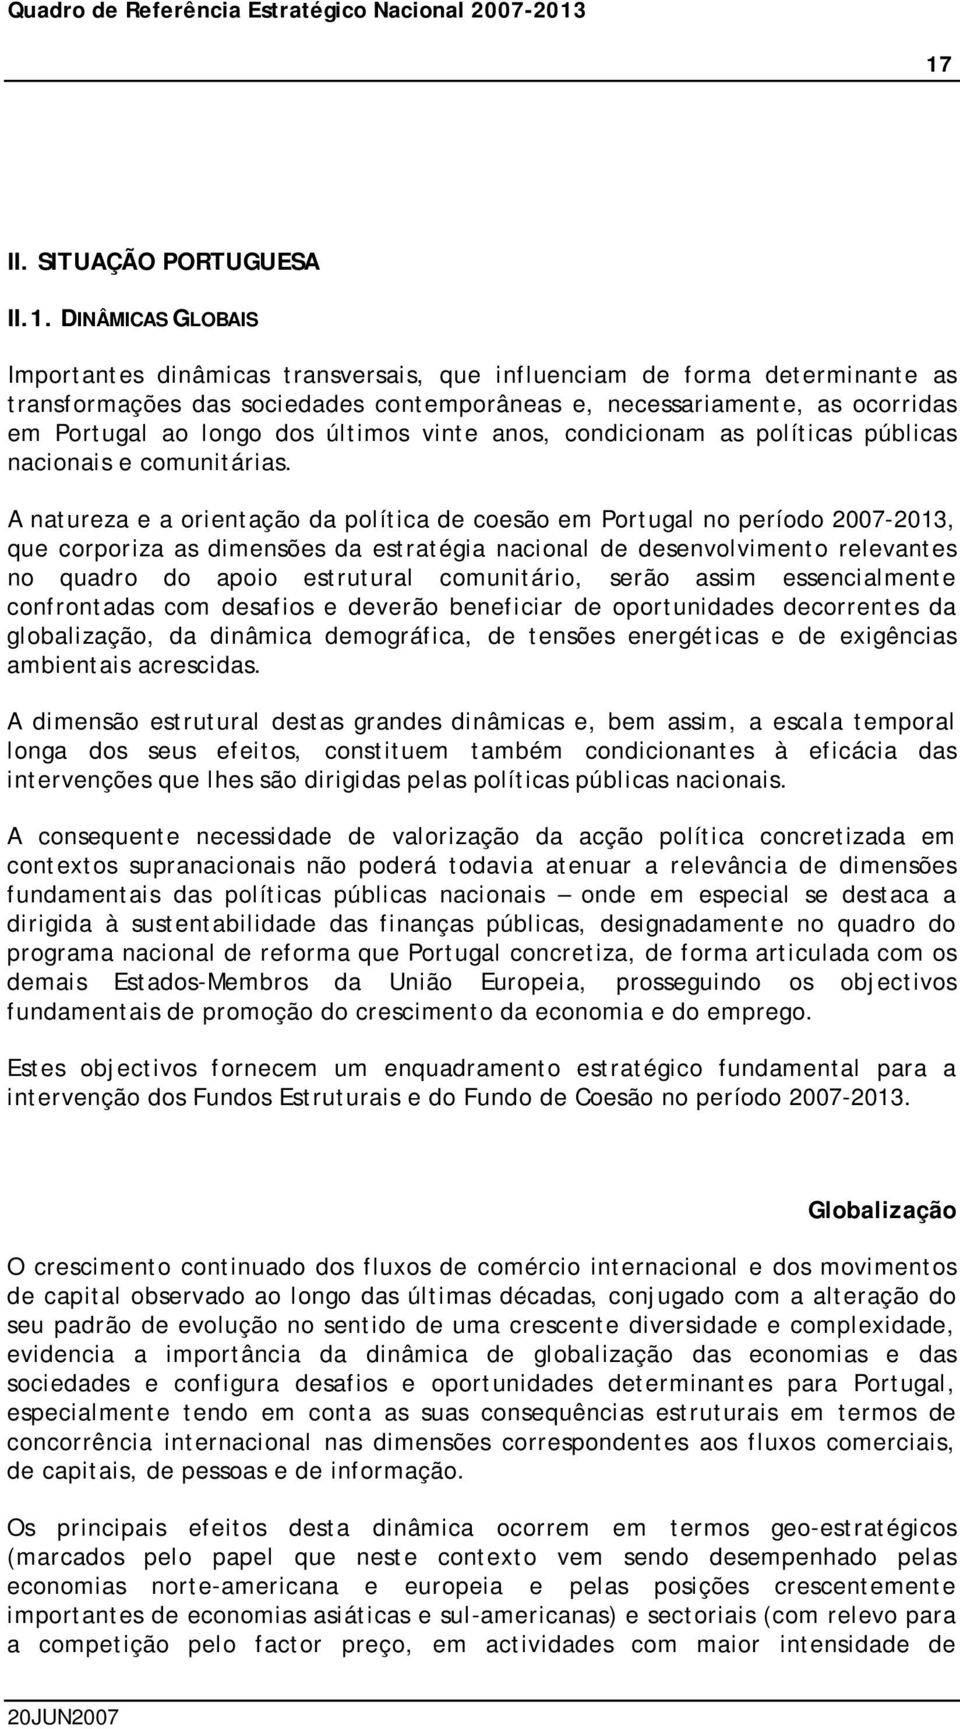 A natureza e a orientação da política de coesão em Portugal no período 2007-2013, que corporiza as dimensões da estratégia nacional de desenvolvimento relevantes no quadro do apoio estrutural